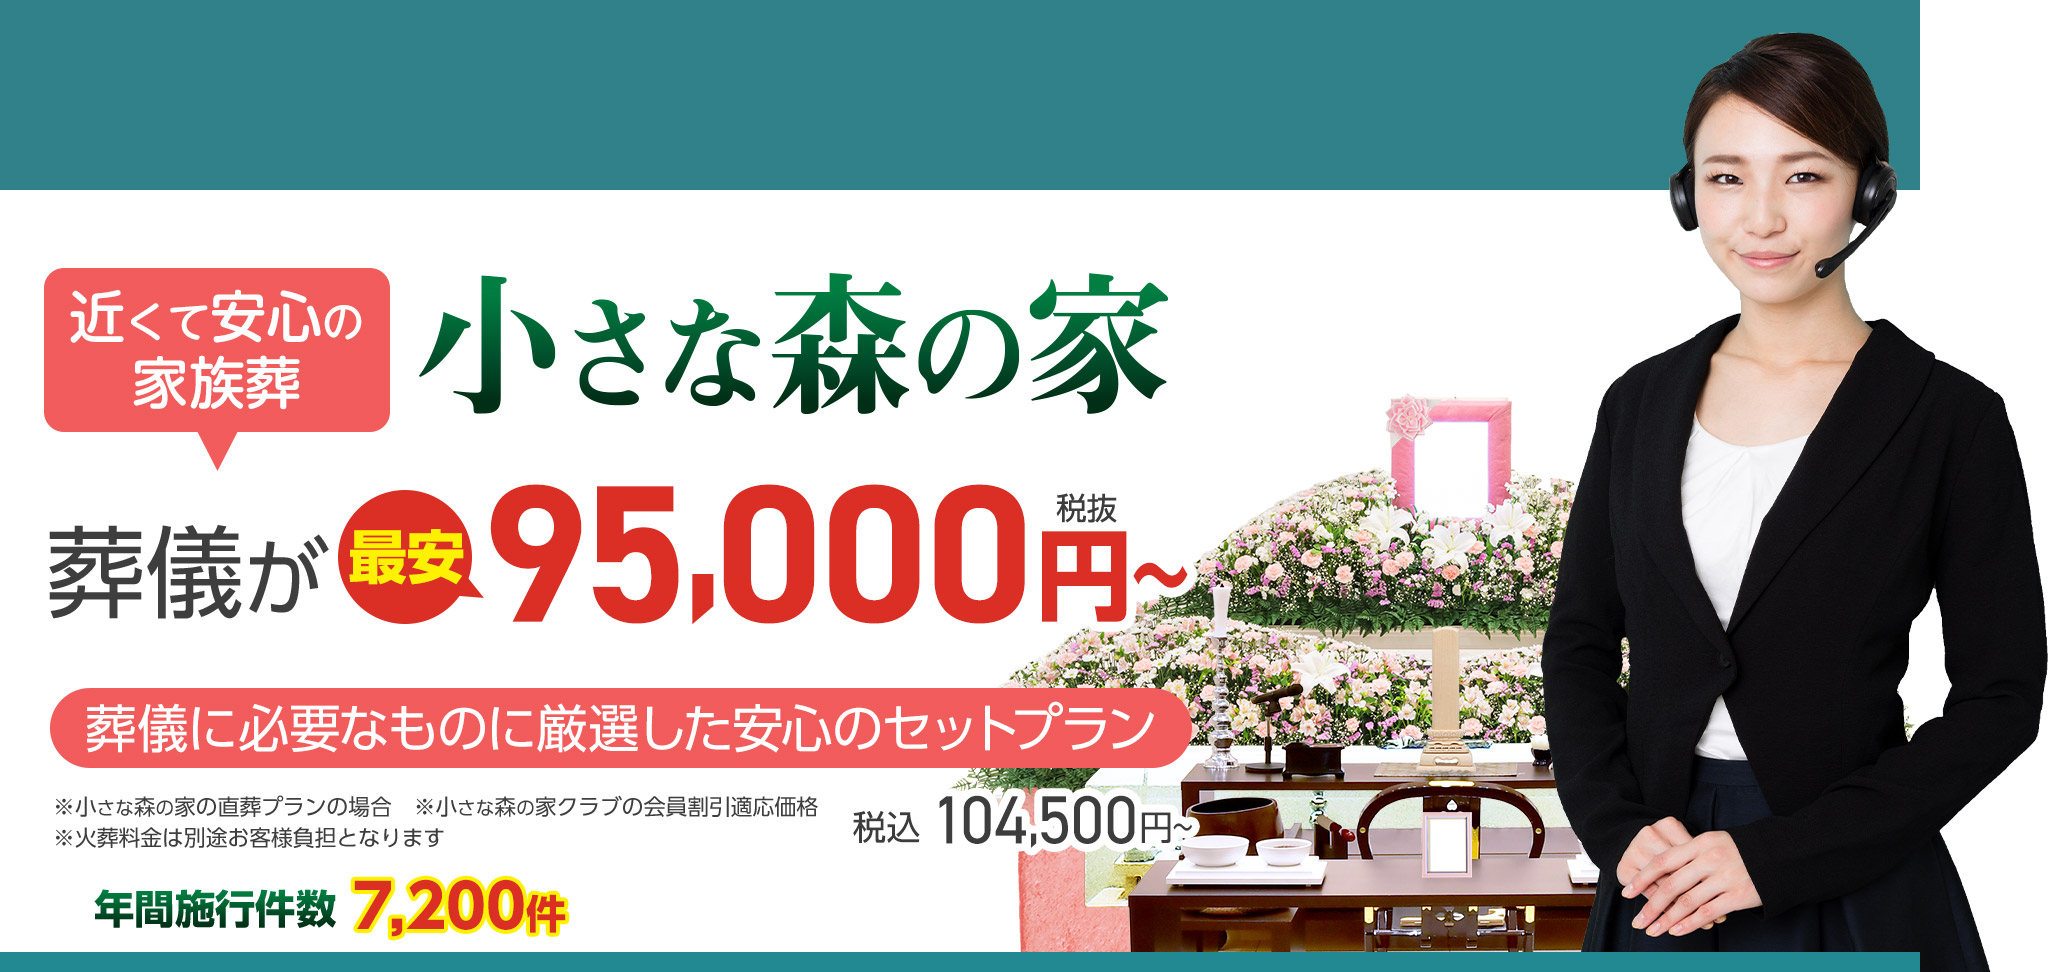 野田市で家族葬をお探しなら小さな森の家 近くて安心の家族葬 葬儀が税抜150,000円